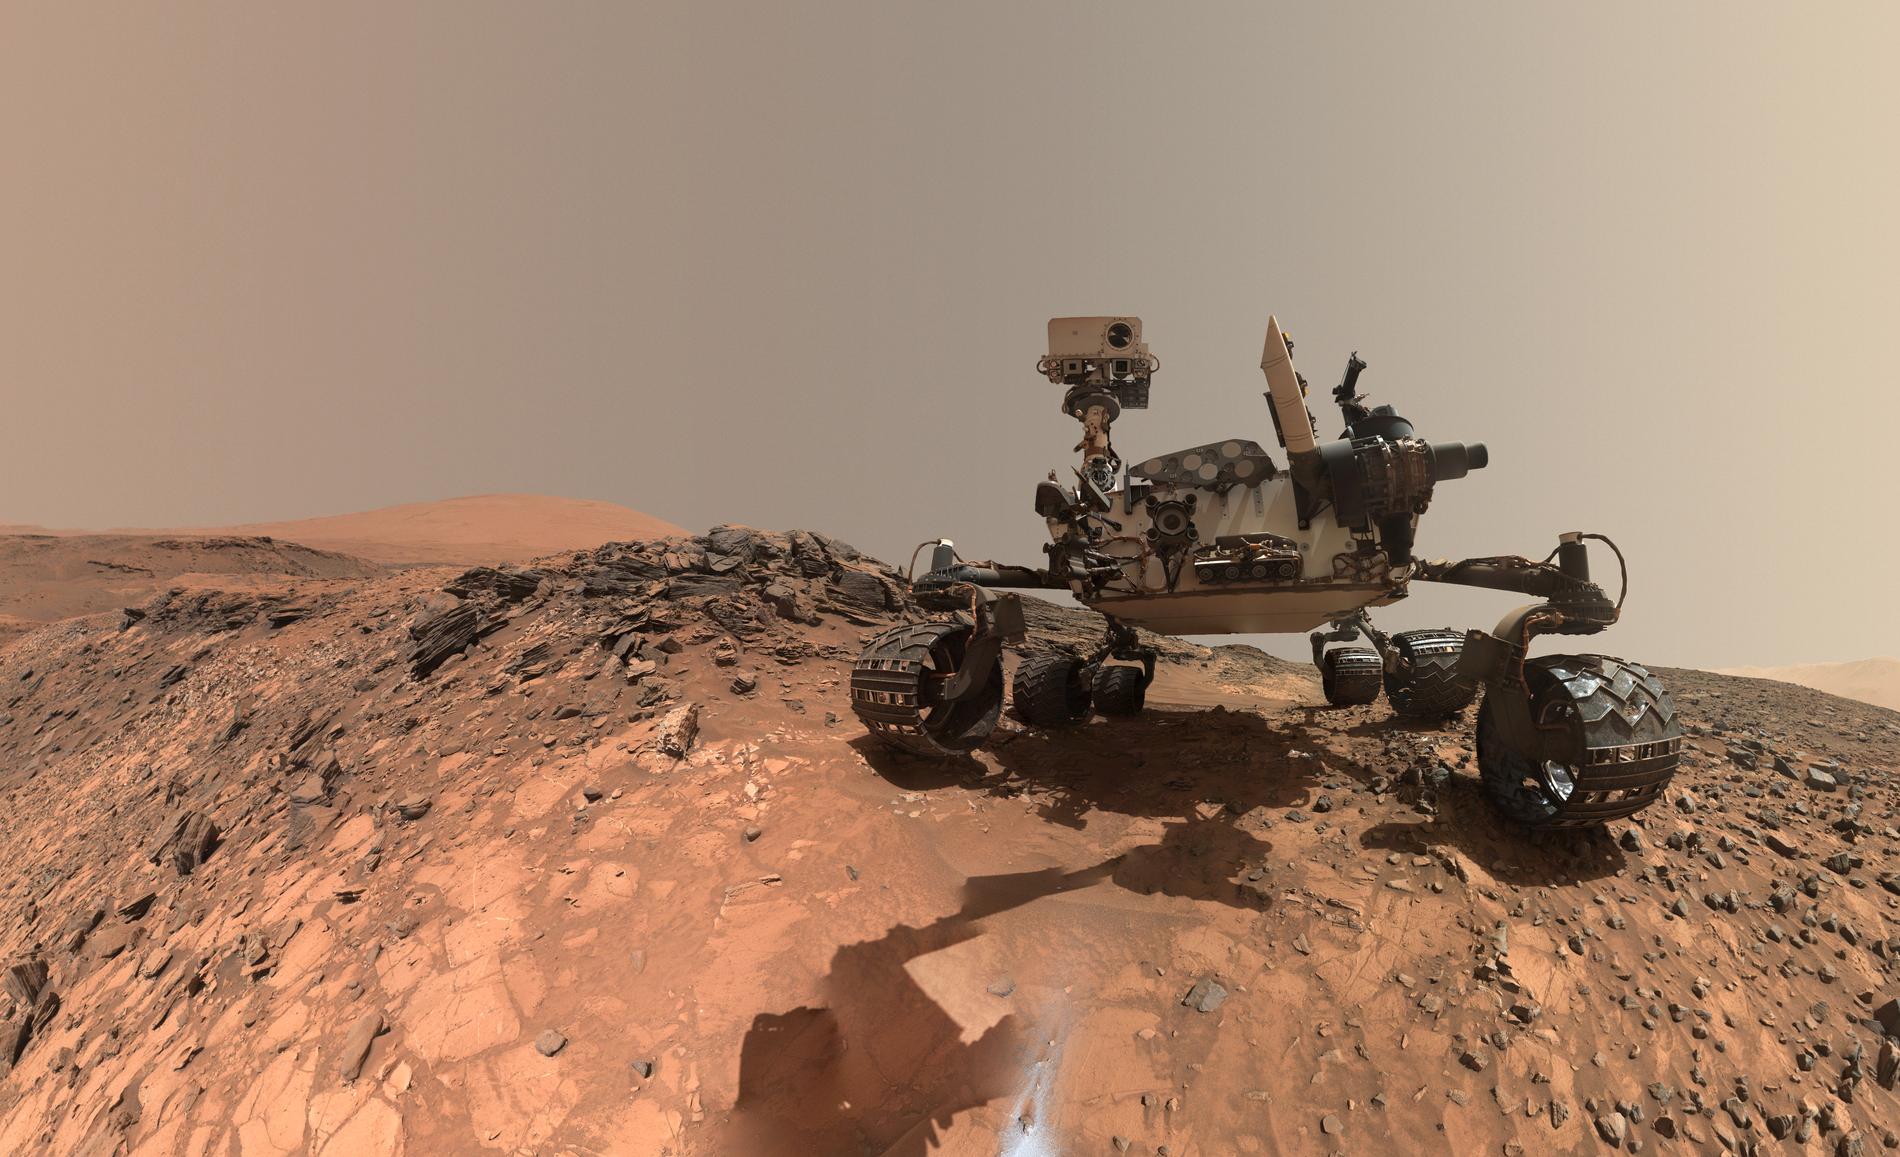 Sedan augusti 2012 undersöker rymdfarkosten Curiosity Mars yta, som kan liknas vid en kall stenöken. På denna bild syns Curiosity på en "selfie" tagen fem veckor efter att den hade landat i en krater på Mars. Arkivbild.